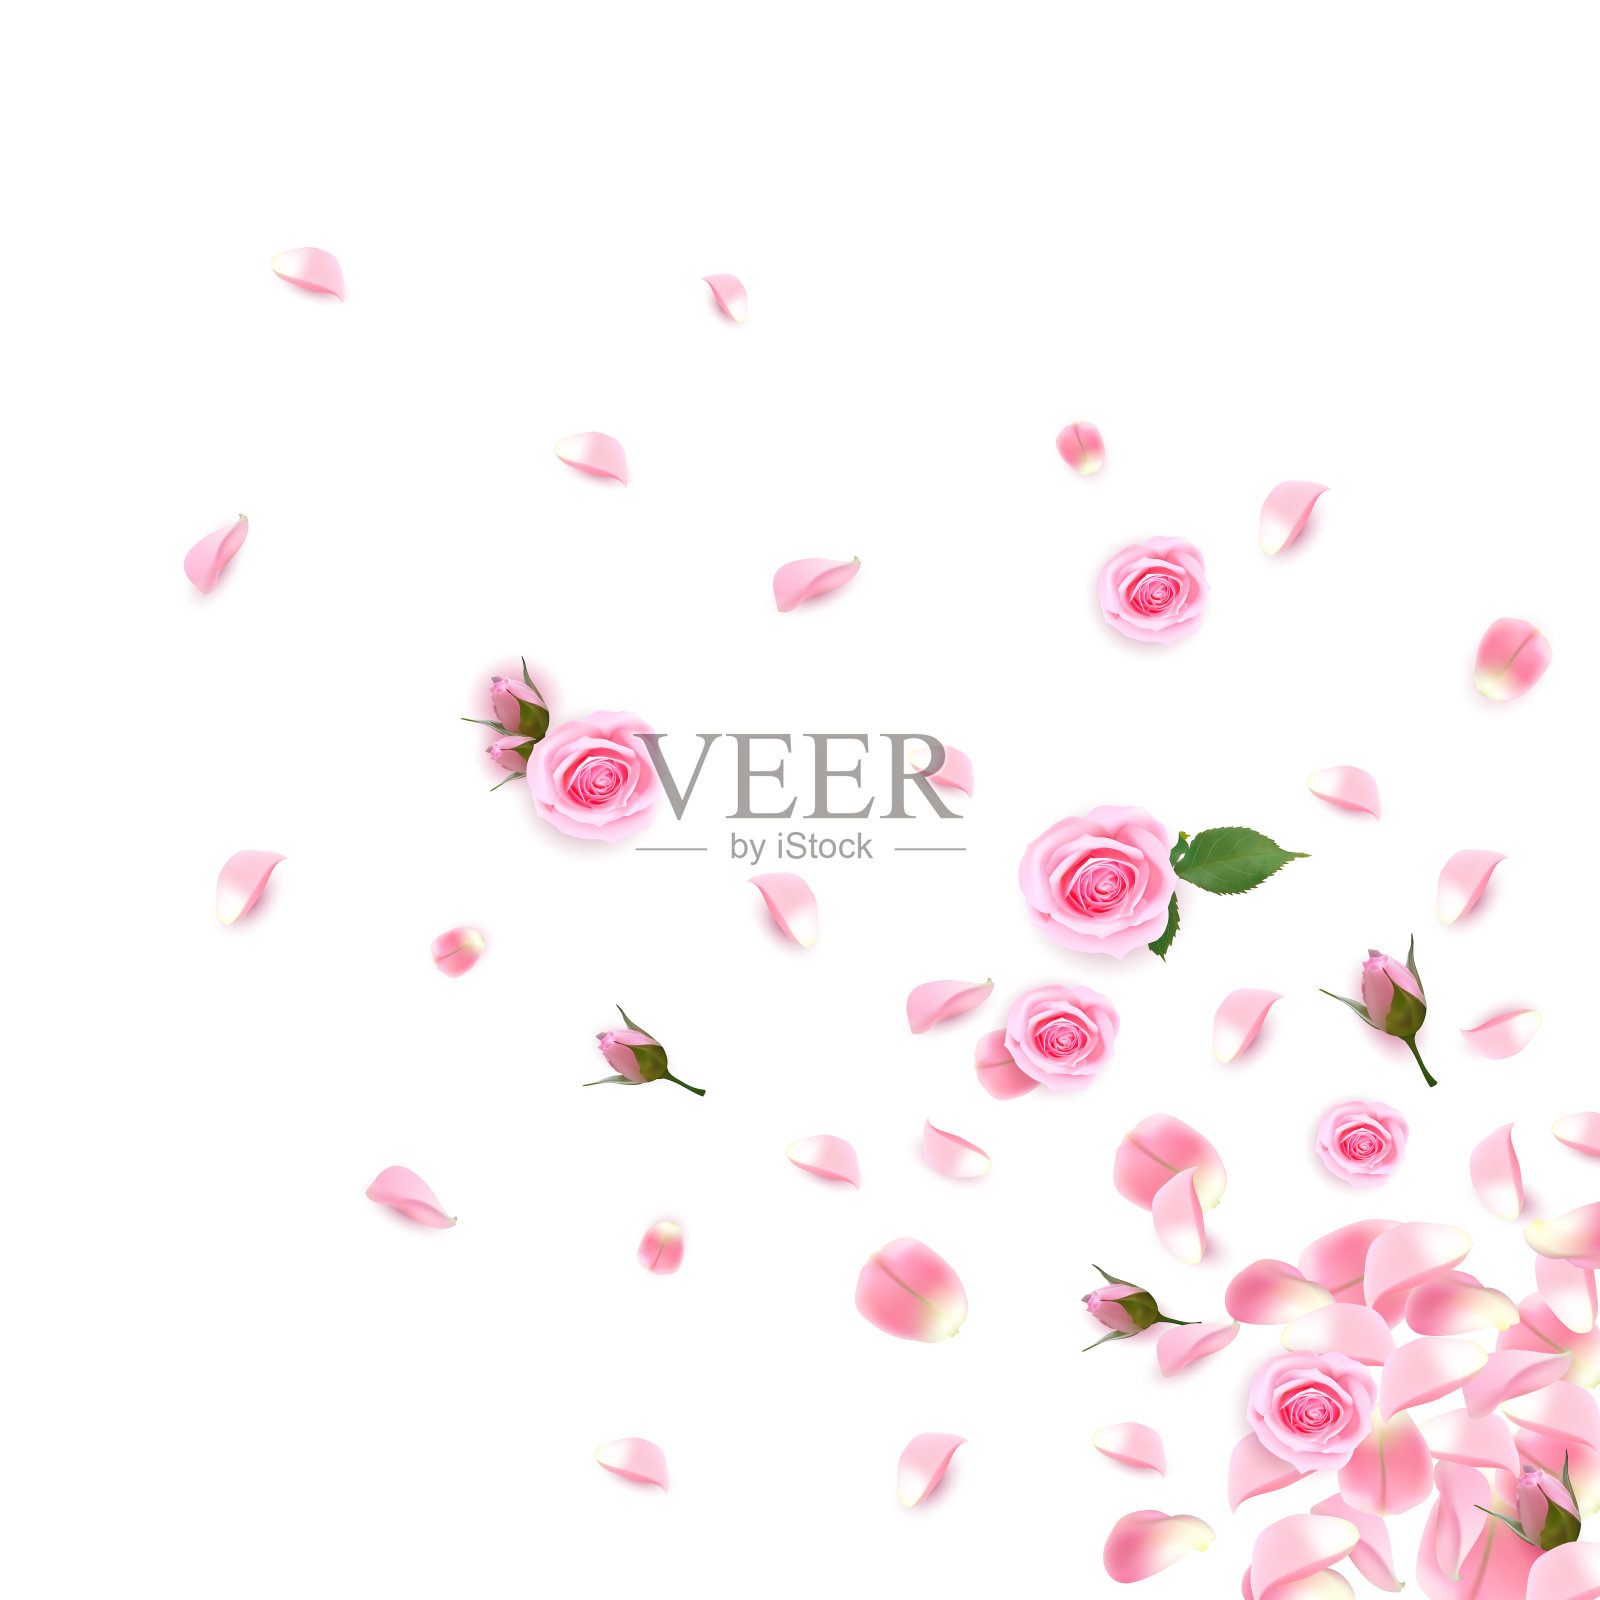 背景与现实的粉红色玫瑰和玫瑰花瓣。粉红色的玫瑰花瓣孤立在白色的背景上插画图片素材